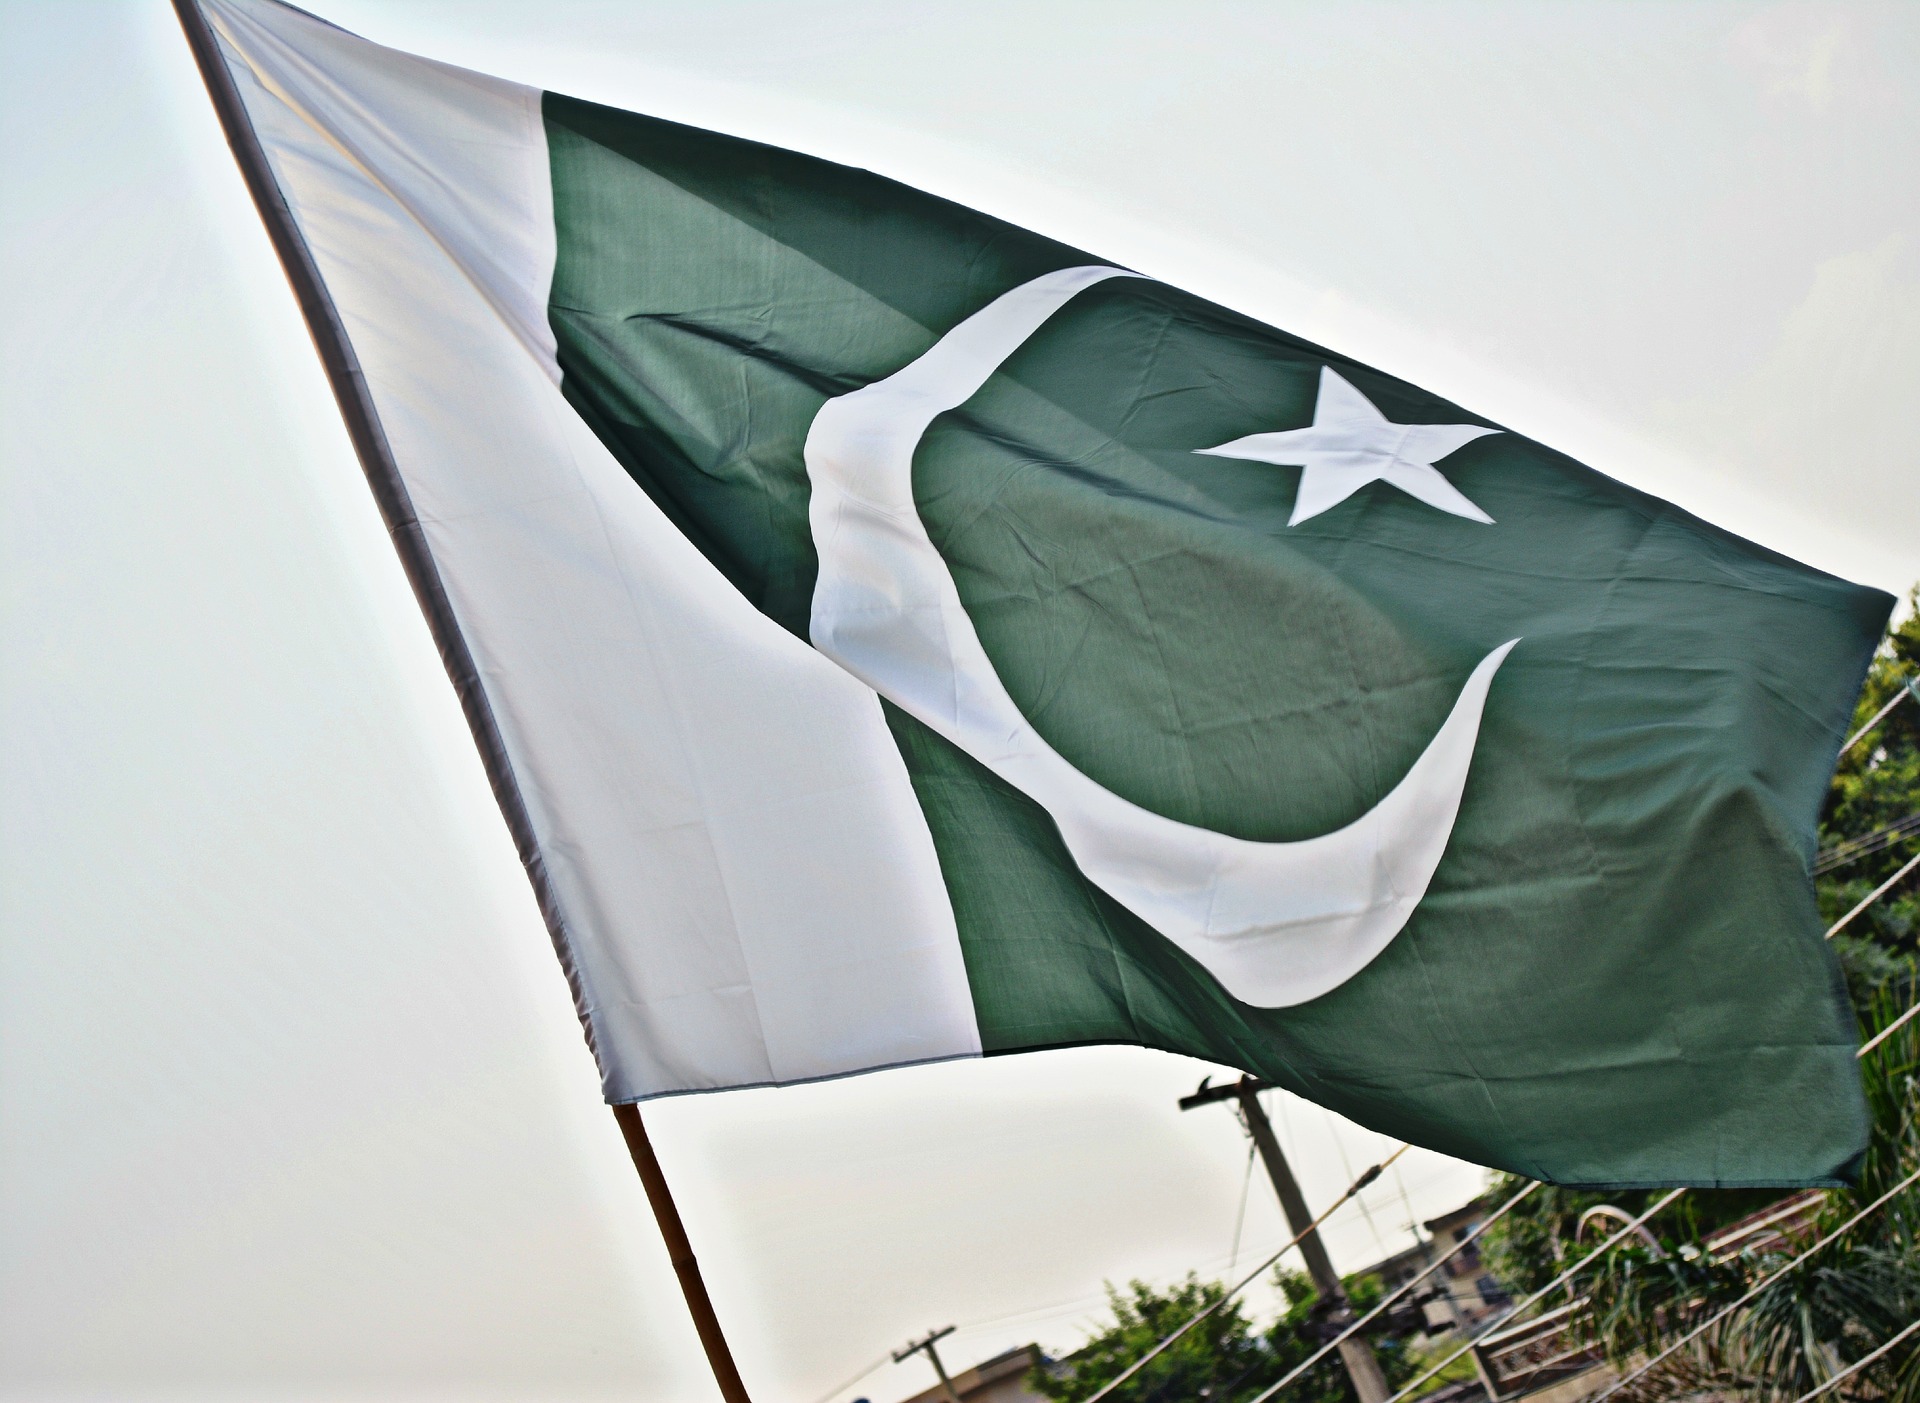 Le ministre pakistanais des finances affirme que le pays ne légalisera jamais les cryptomonnaies